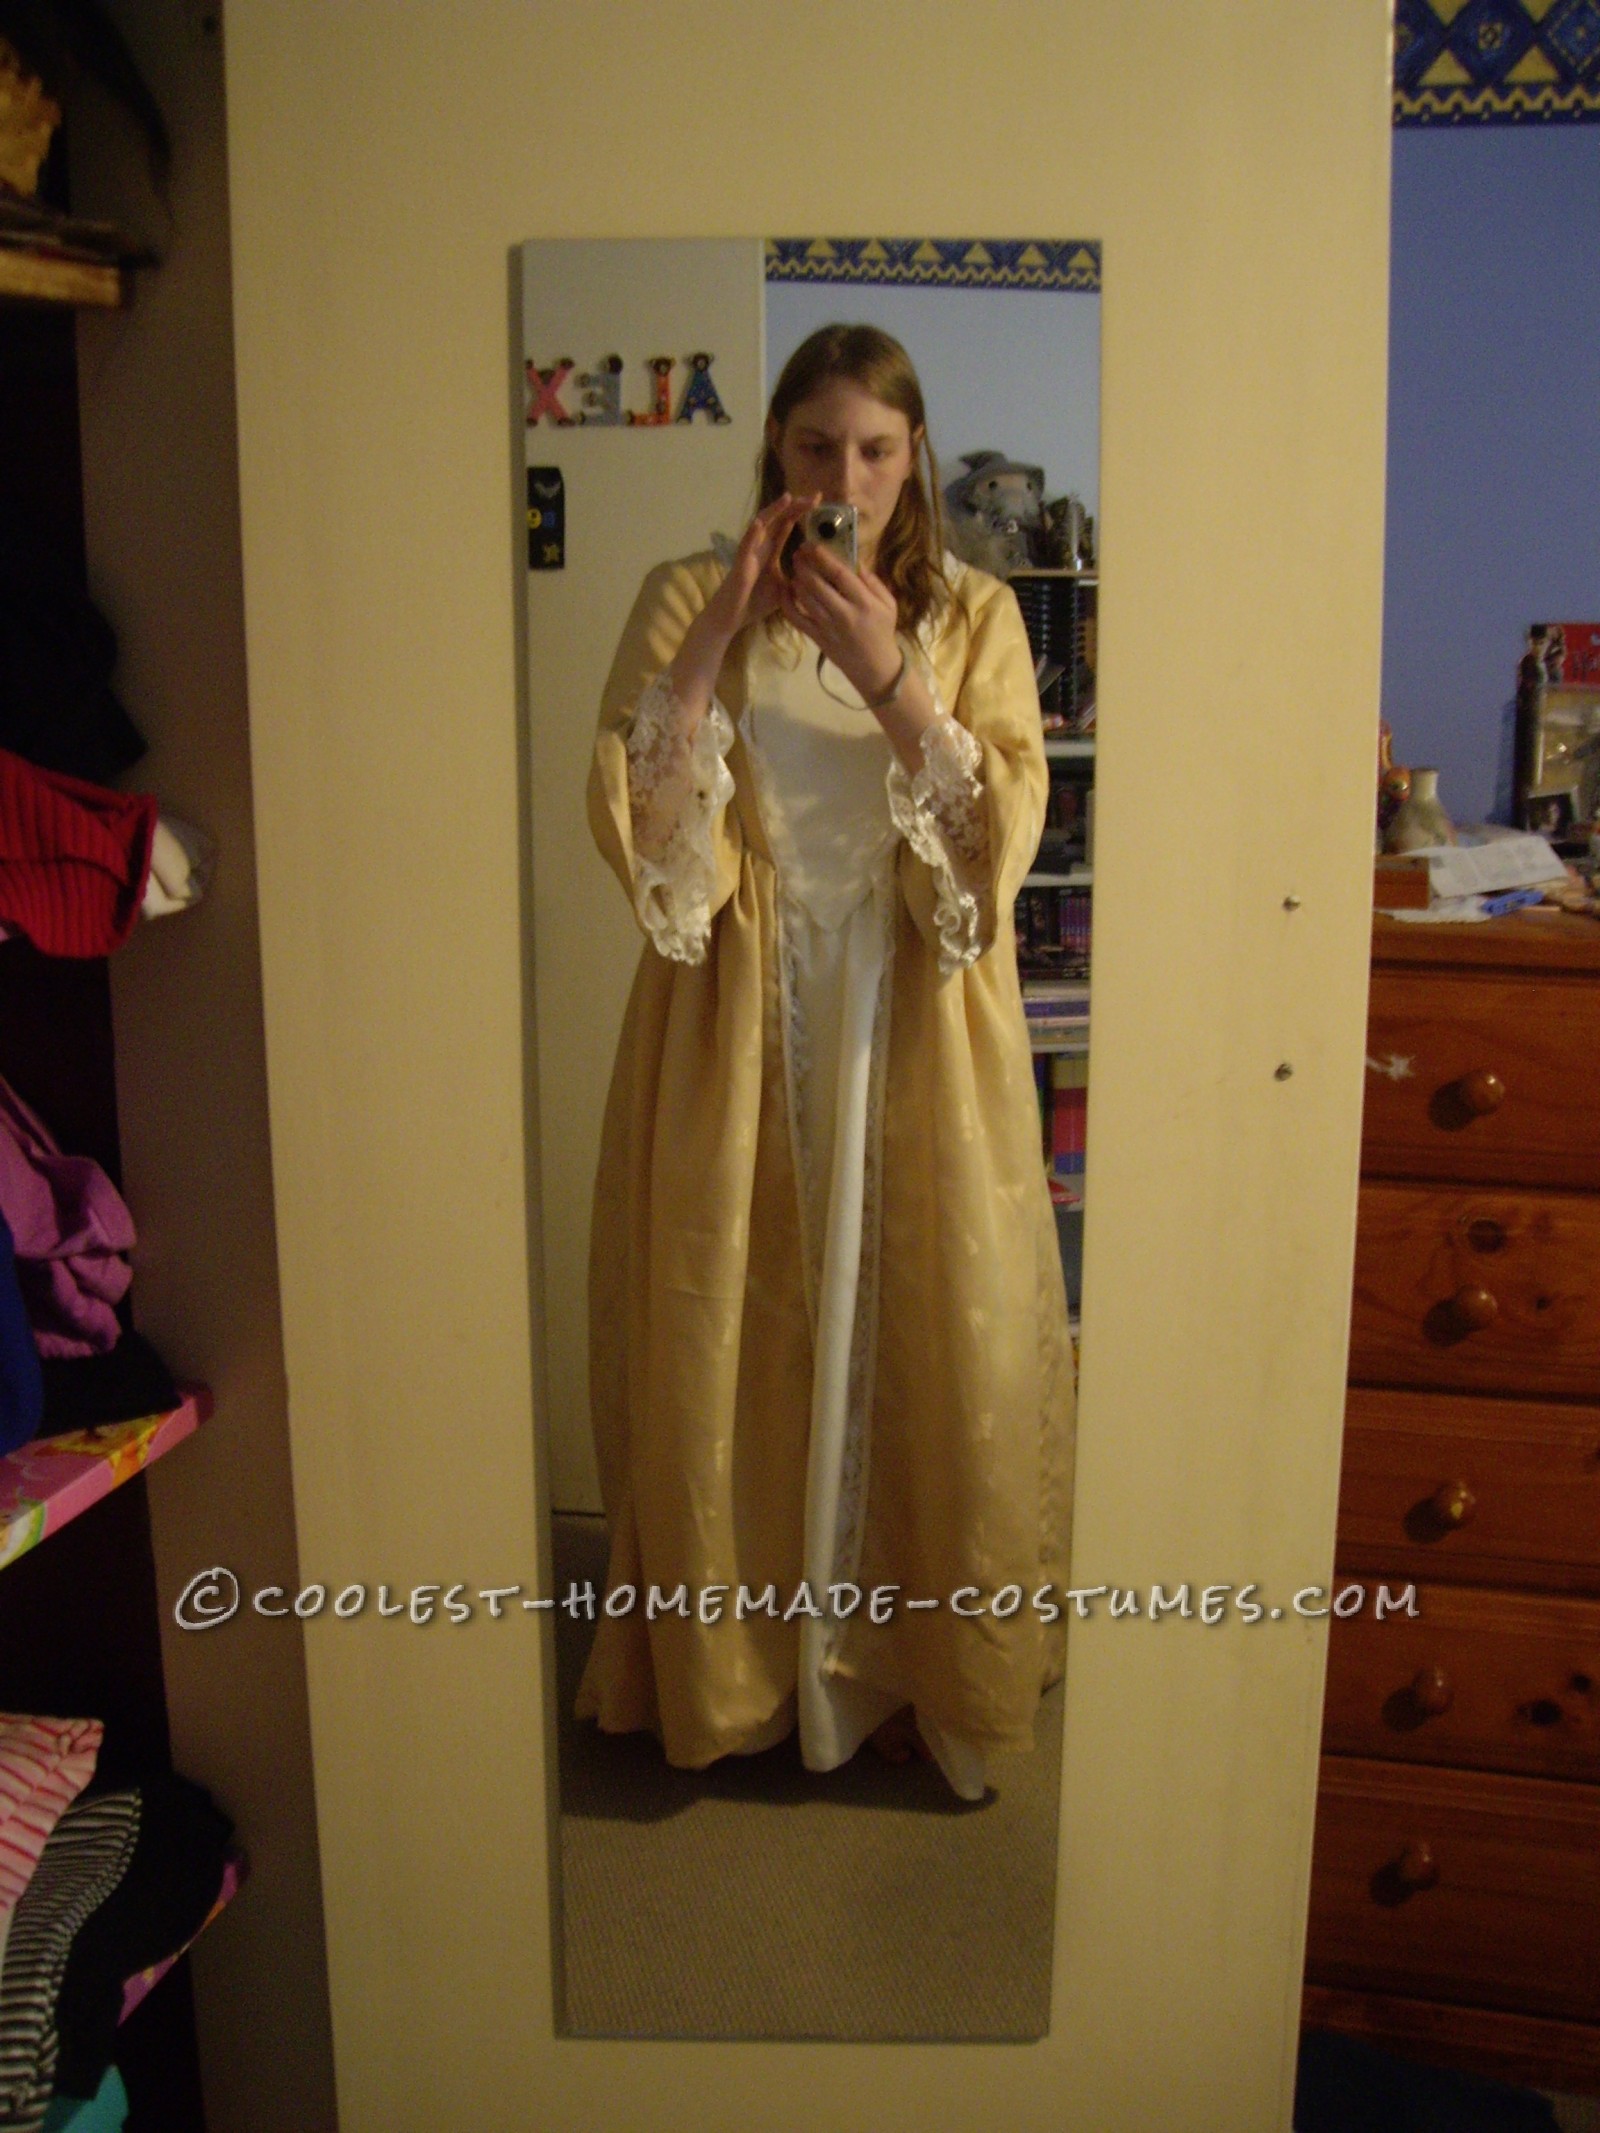 Elizabeth Swan's Golden Gown